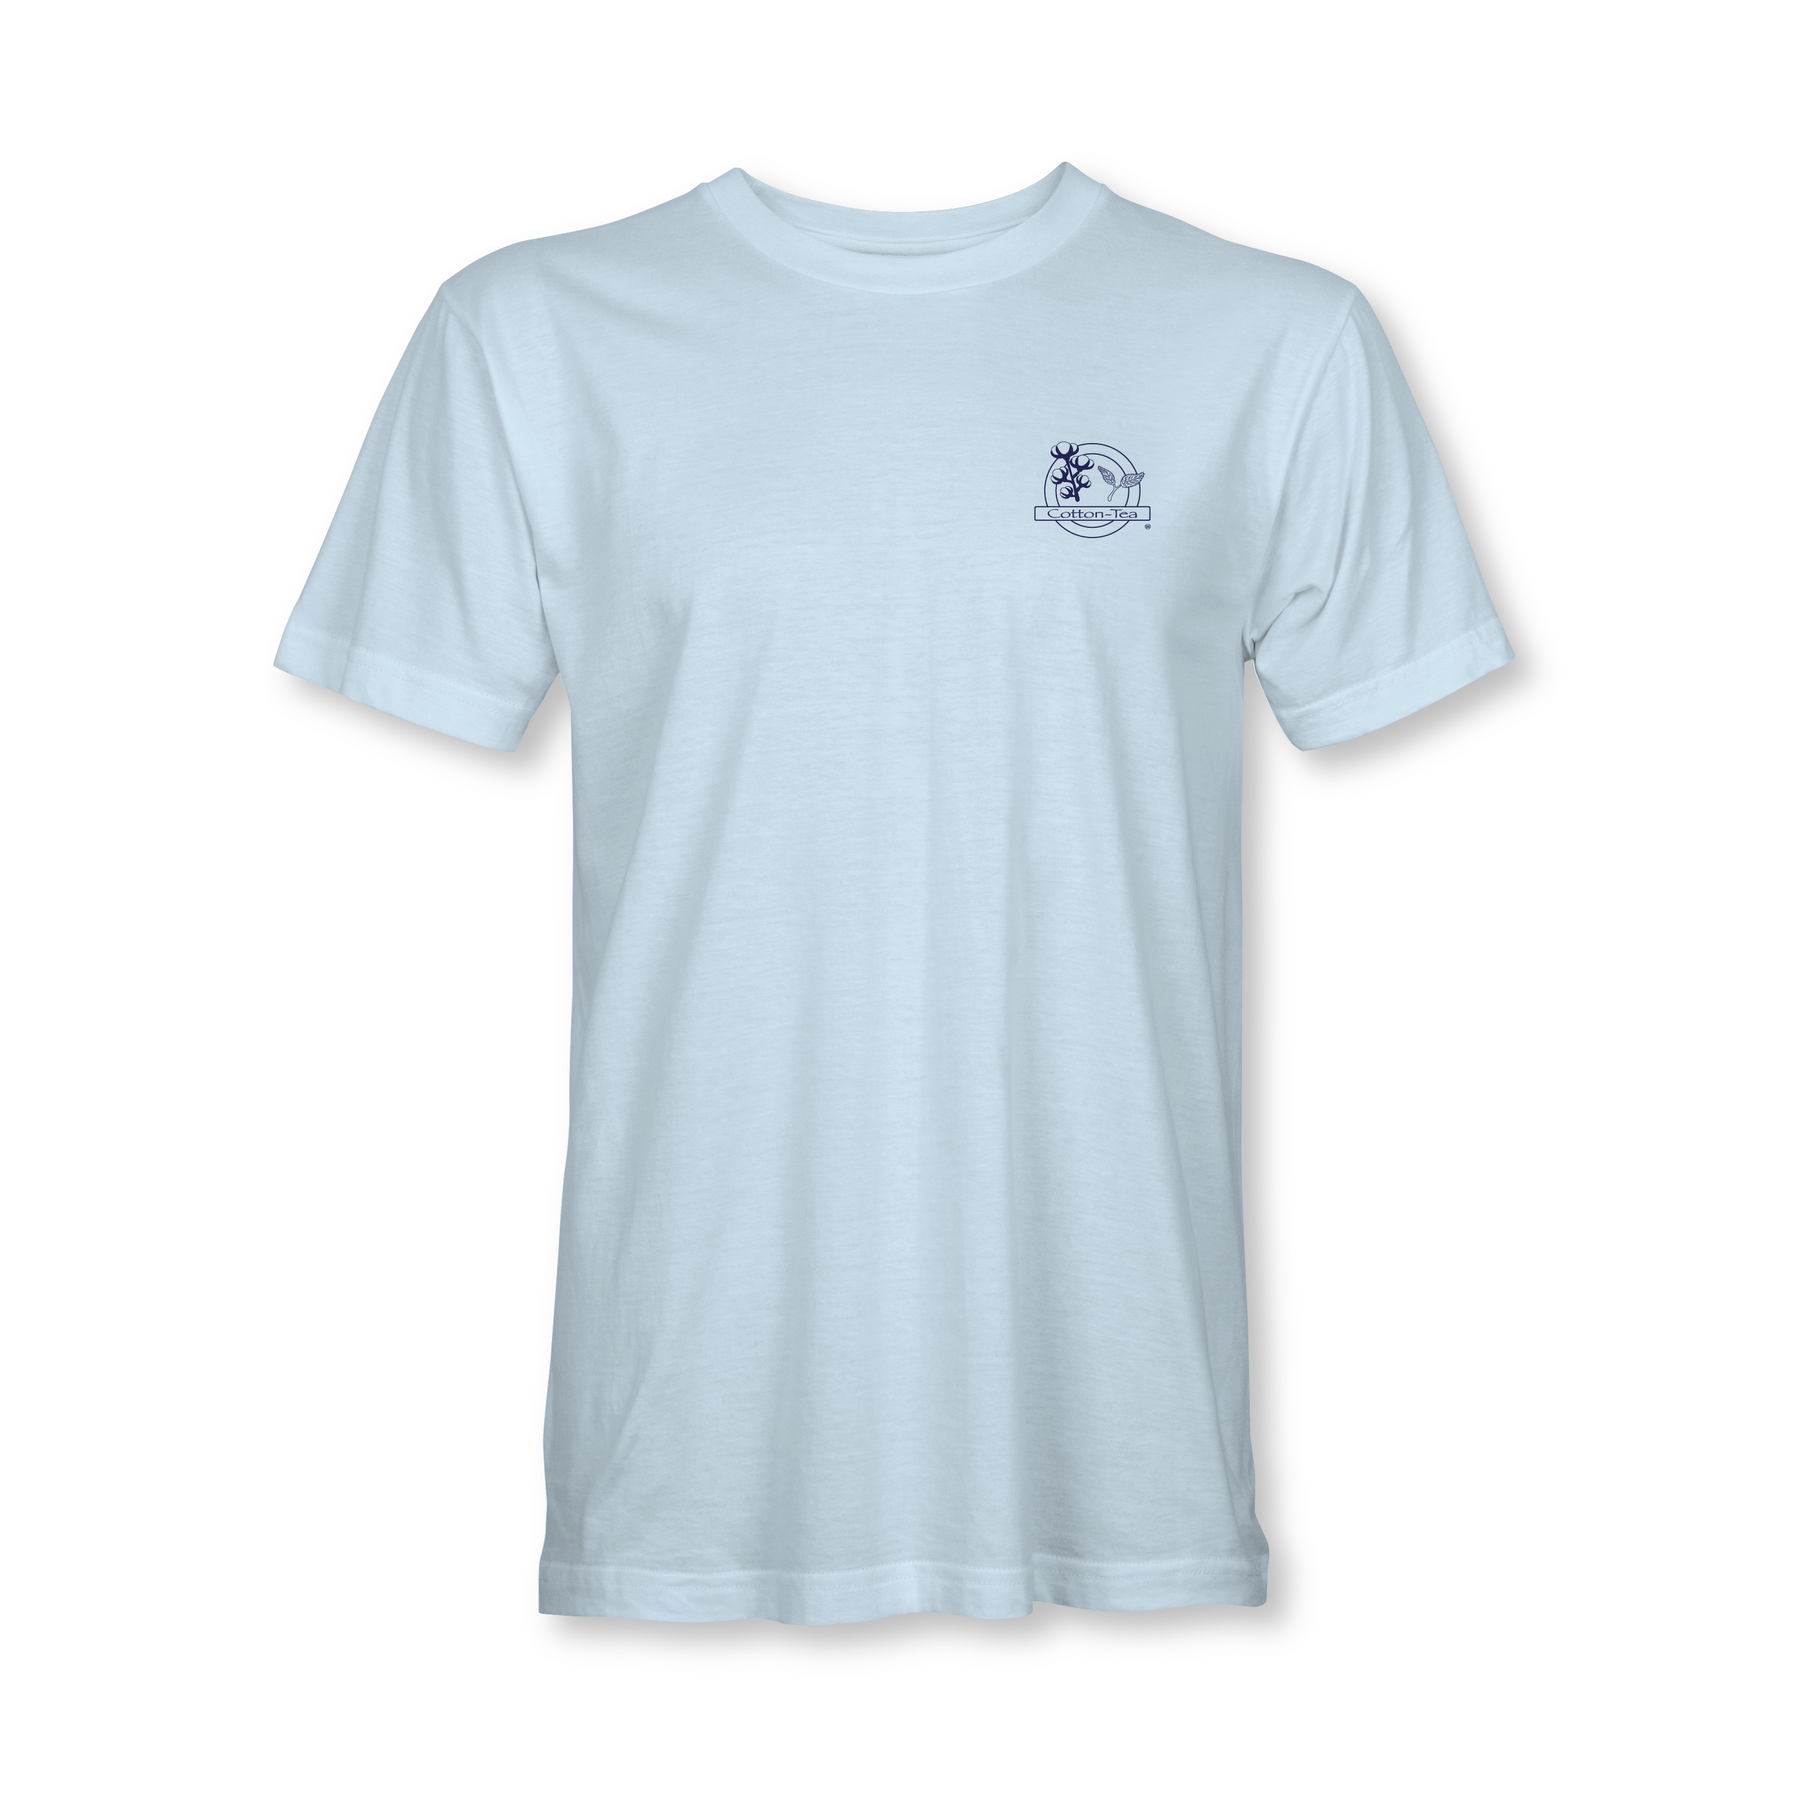 Tails Up T-Shirt | Cotton-Tea L / Light Blue by Cotton-Tea